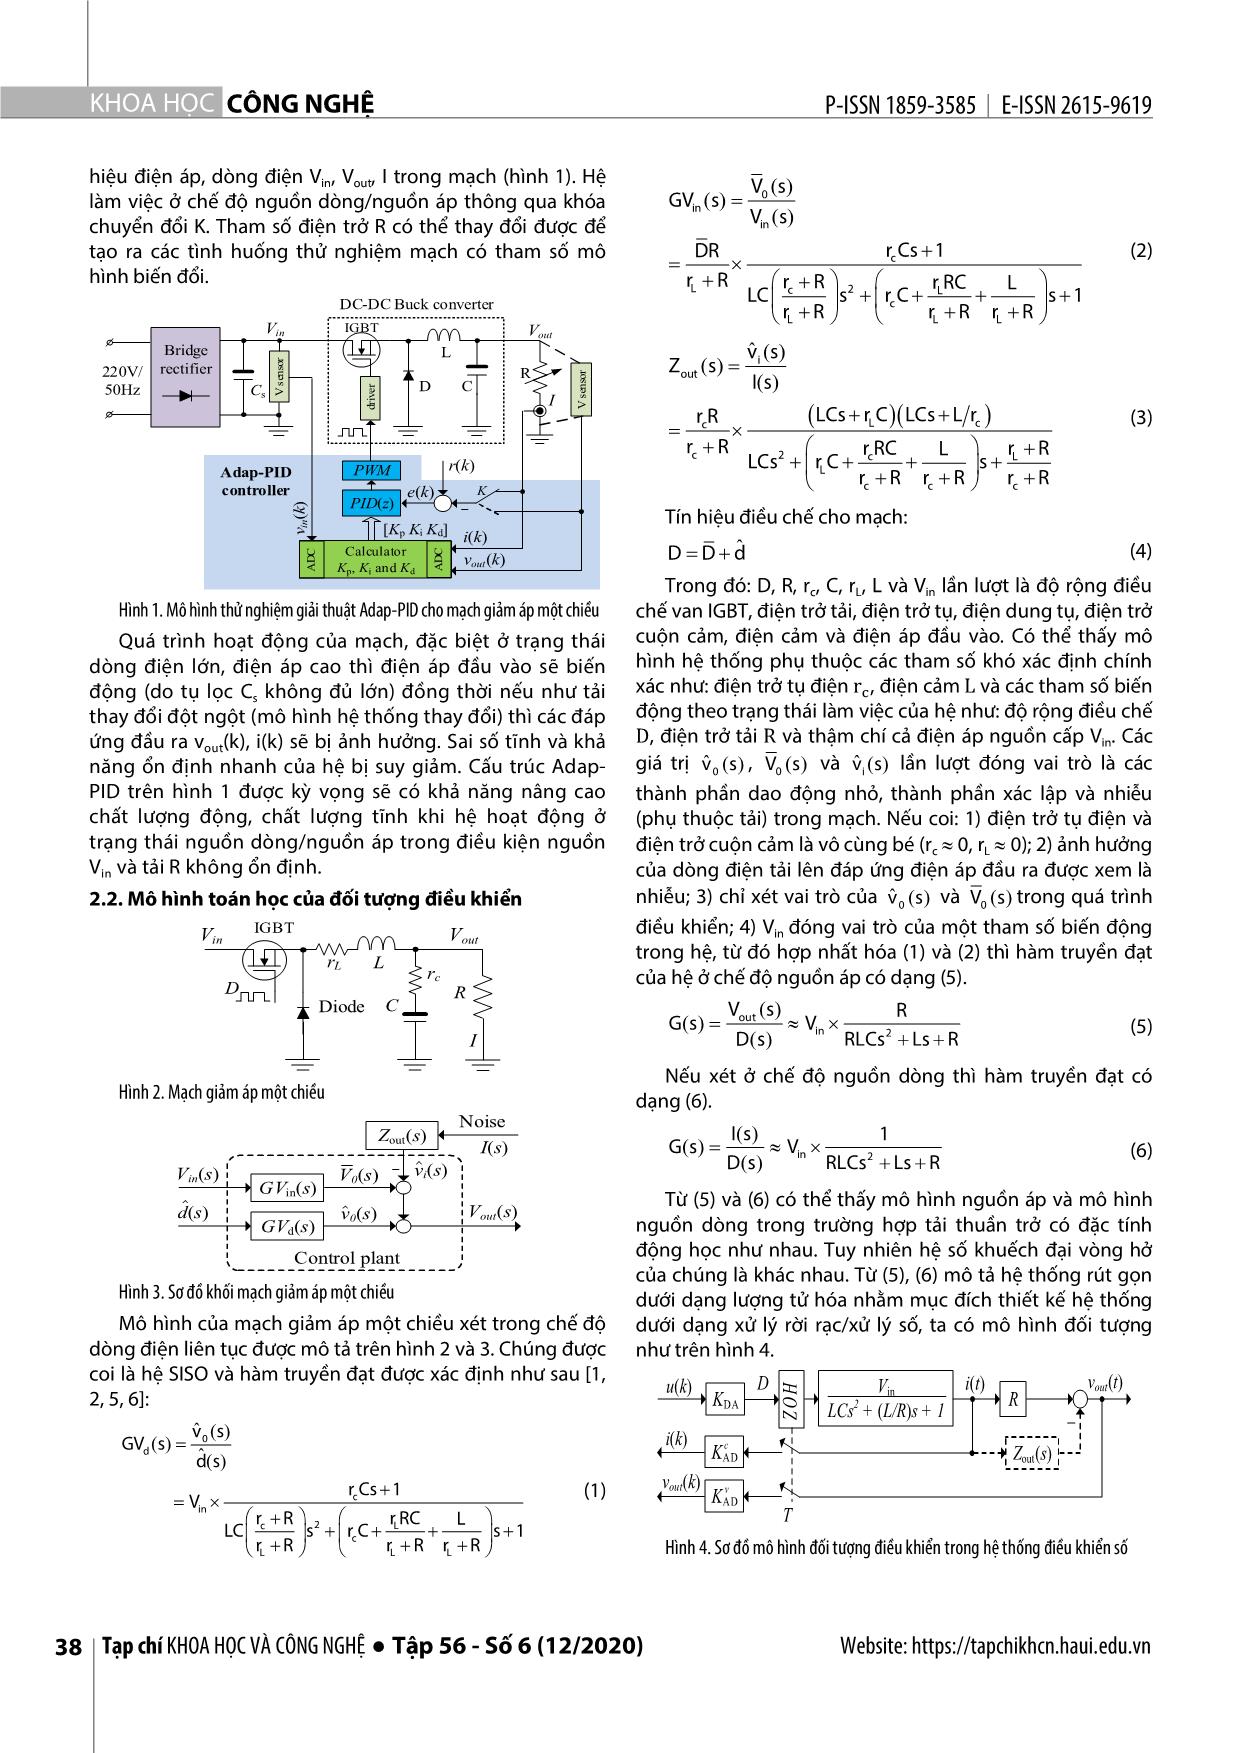 Thiết kế giải thuật điều khiển PID thích nghi cho bộ nguồn một chiều dòng - Áp tích hợp trang 2